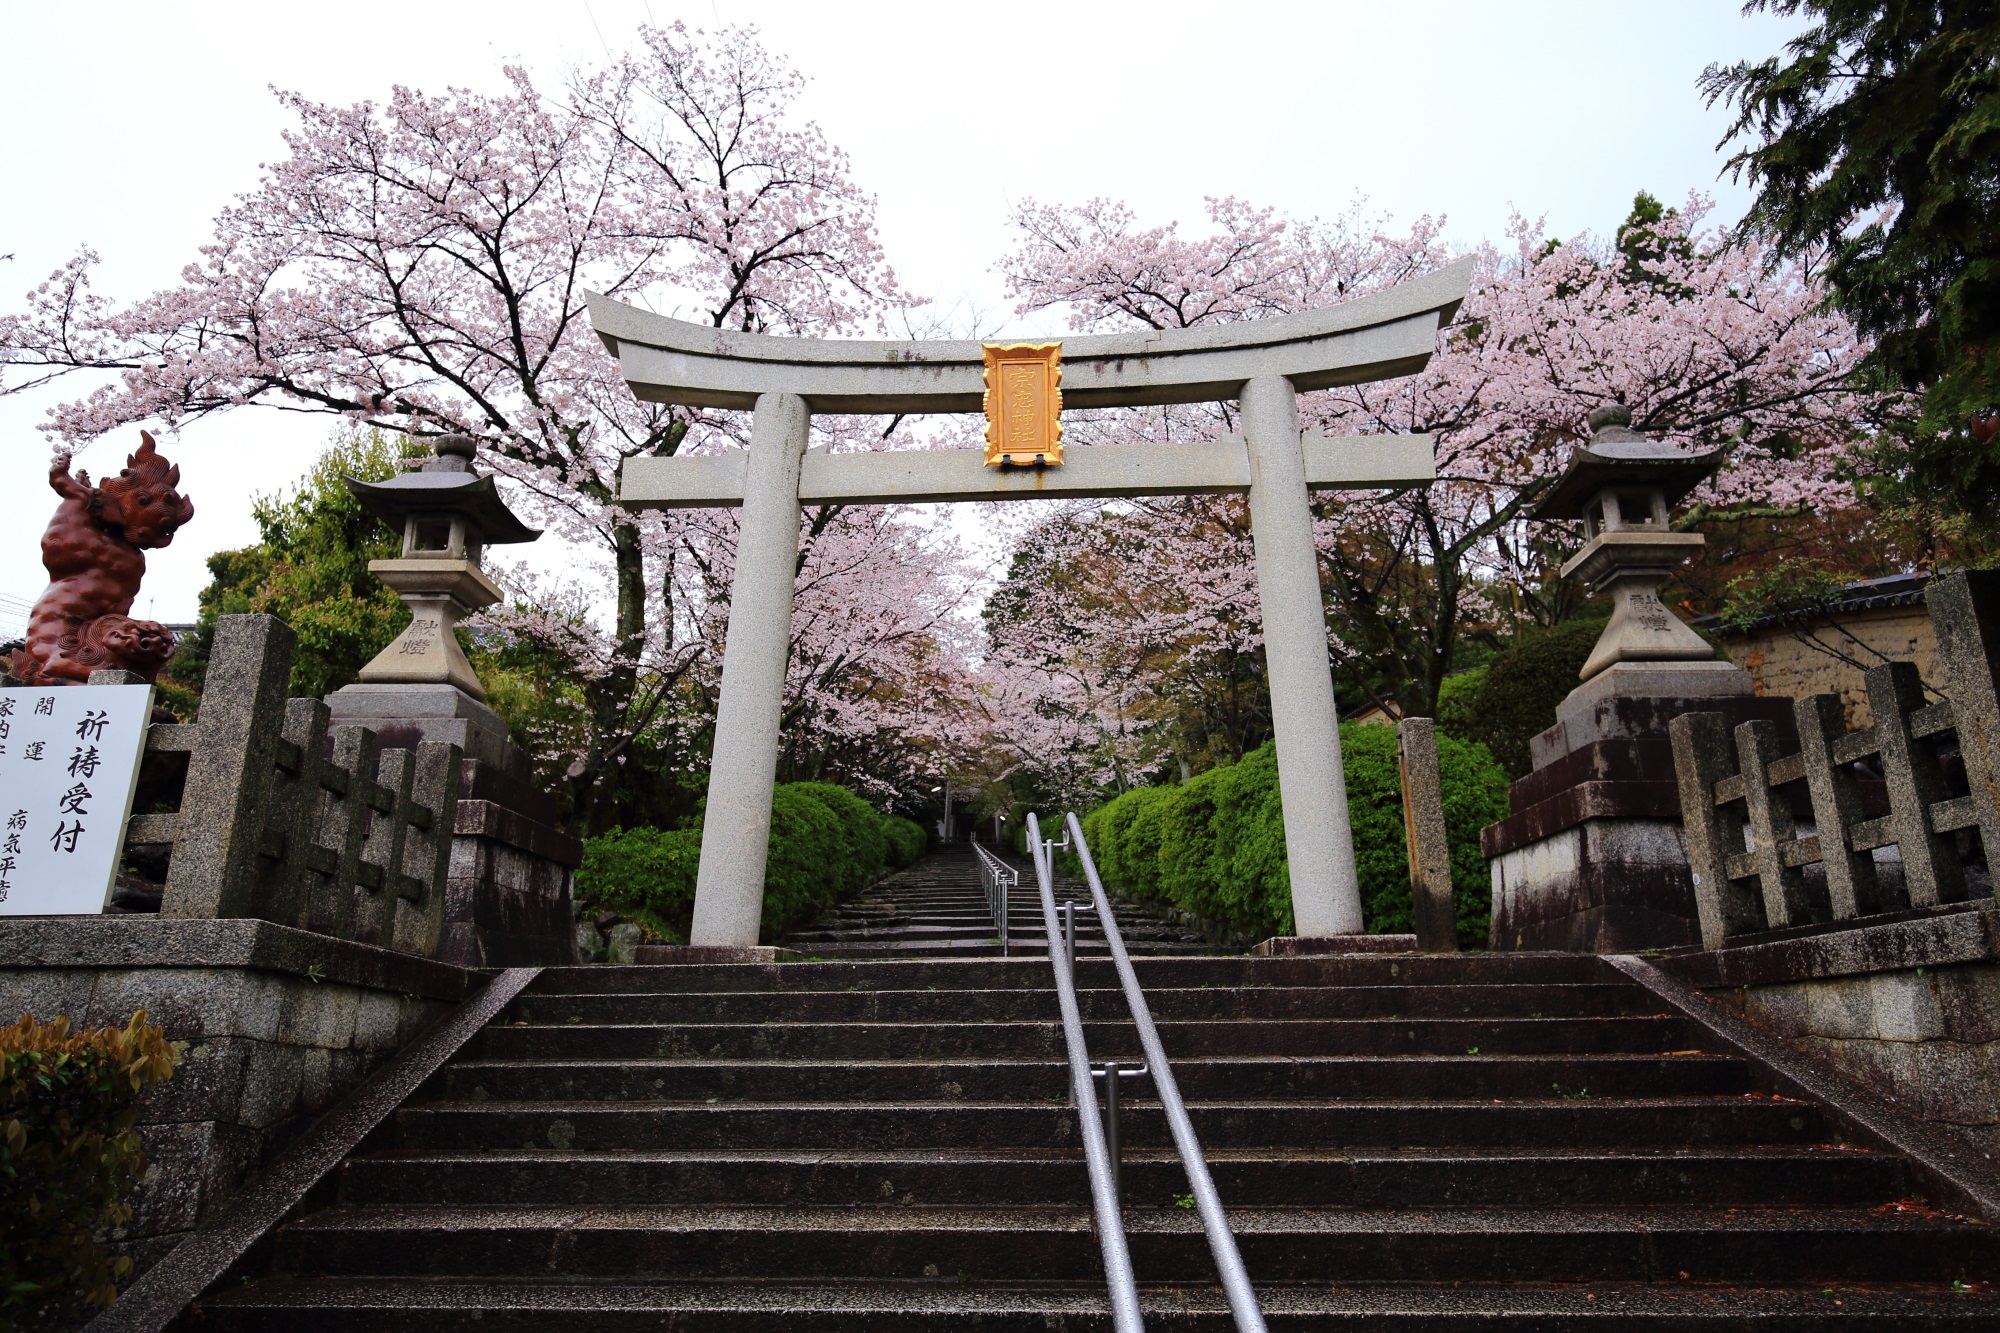 桜の穴場の宗忠神社の鳥居と石段の桜